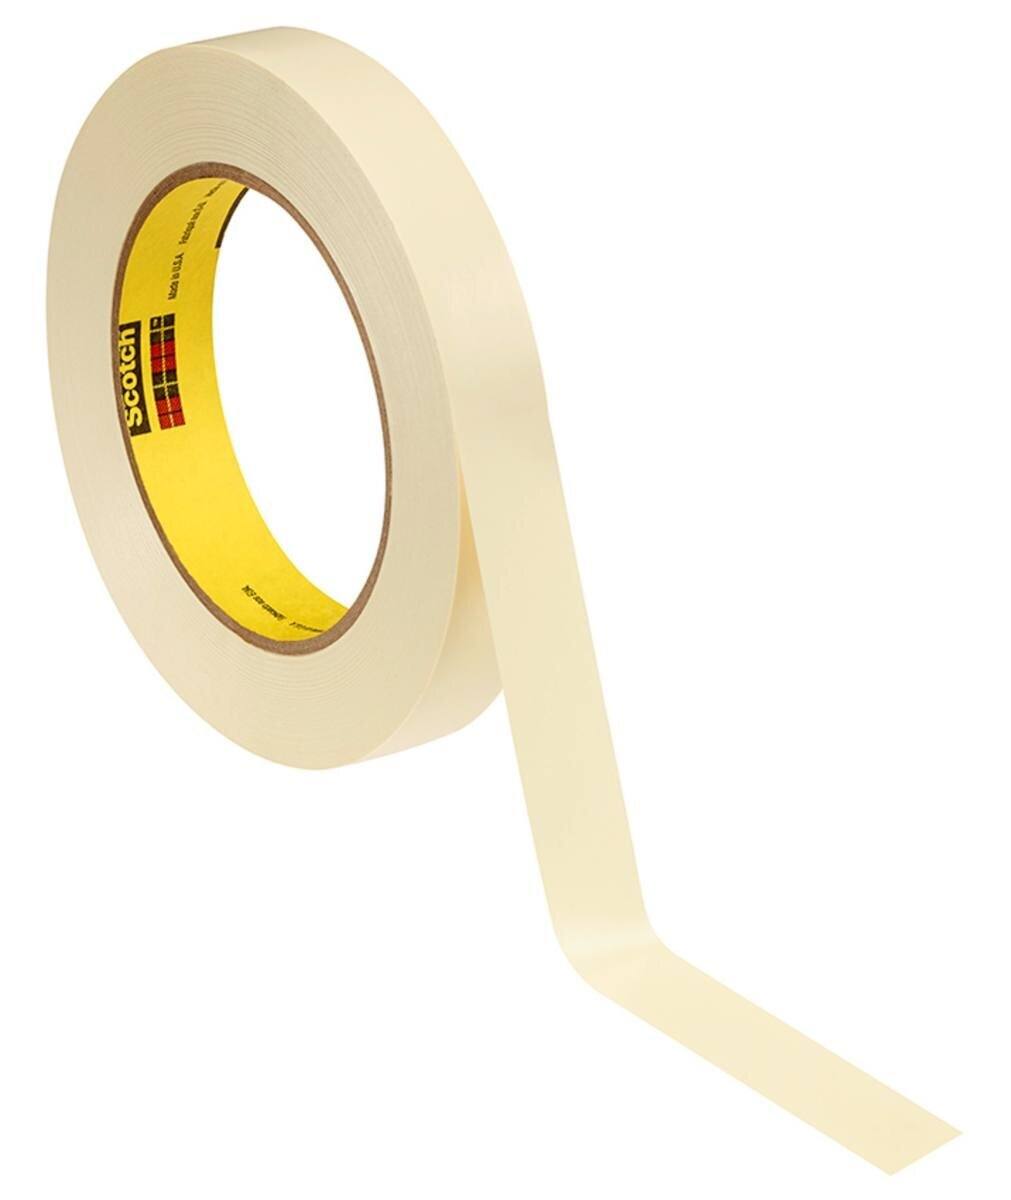 3M Galvanikklebeband Weich-PVC 470, gelb, 19 mm x 33 m, 0,18 mm